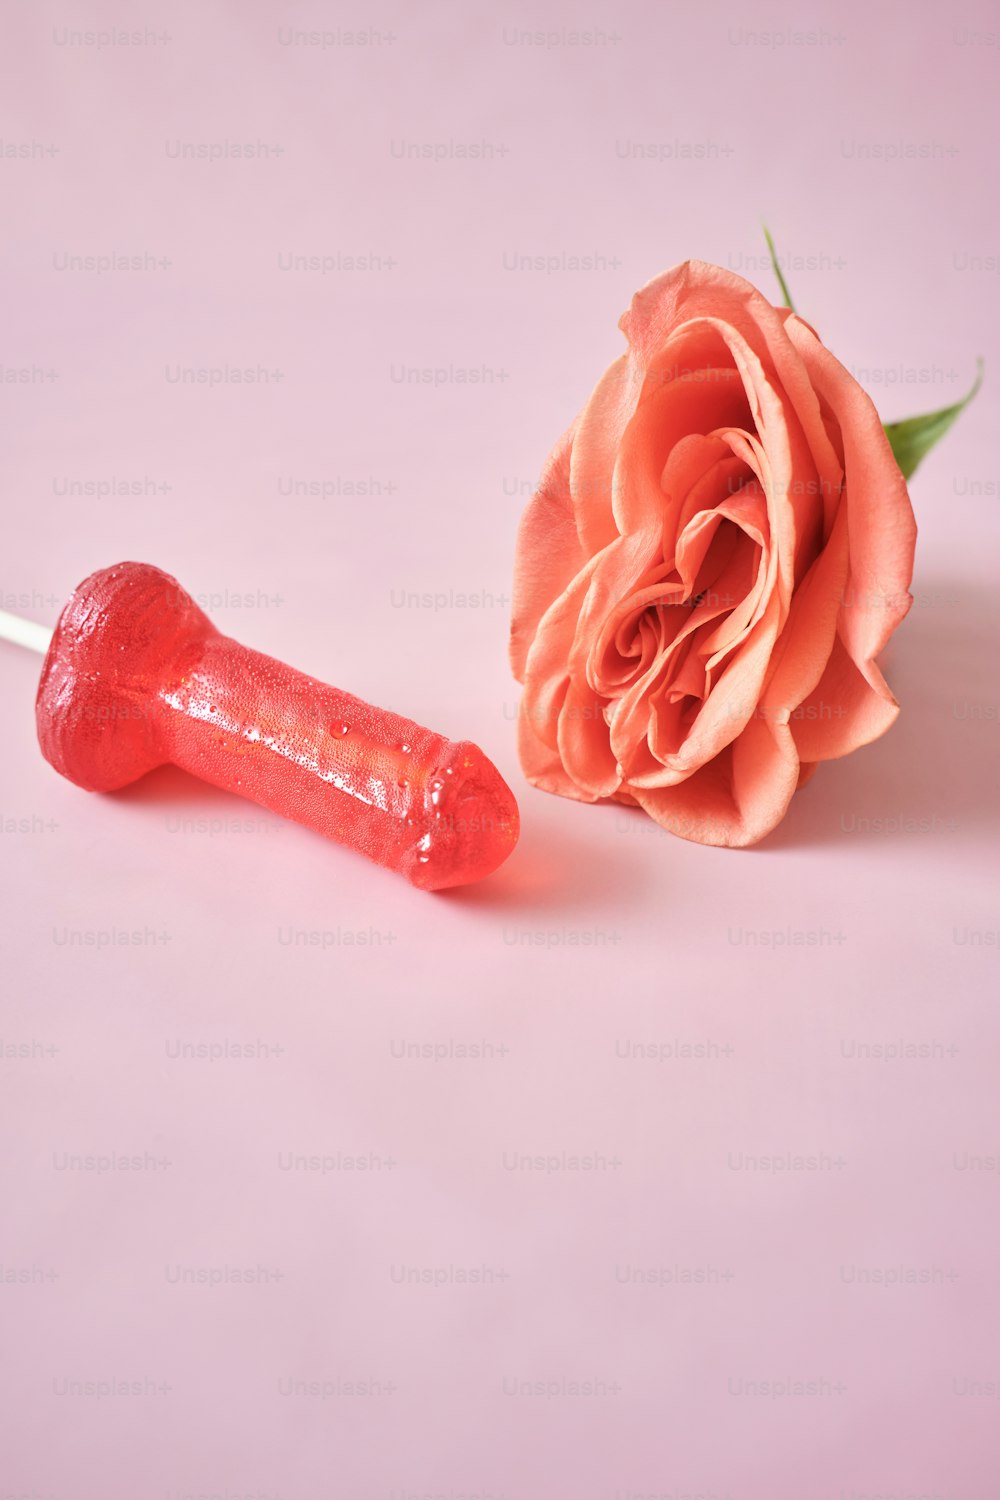 une rose et une barre chocolatée sur fond rose